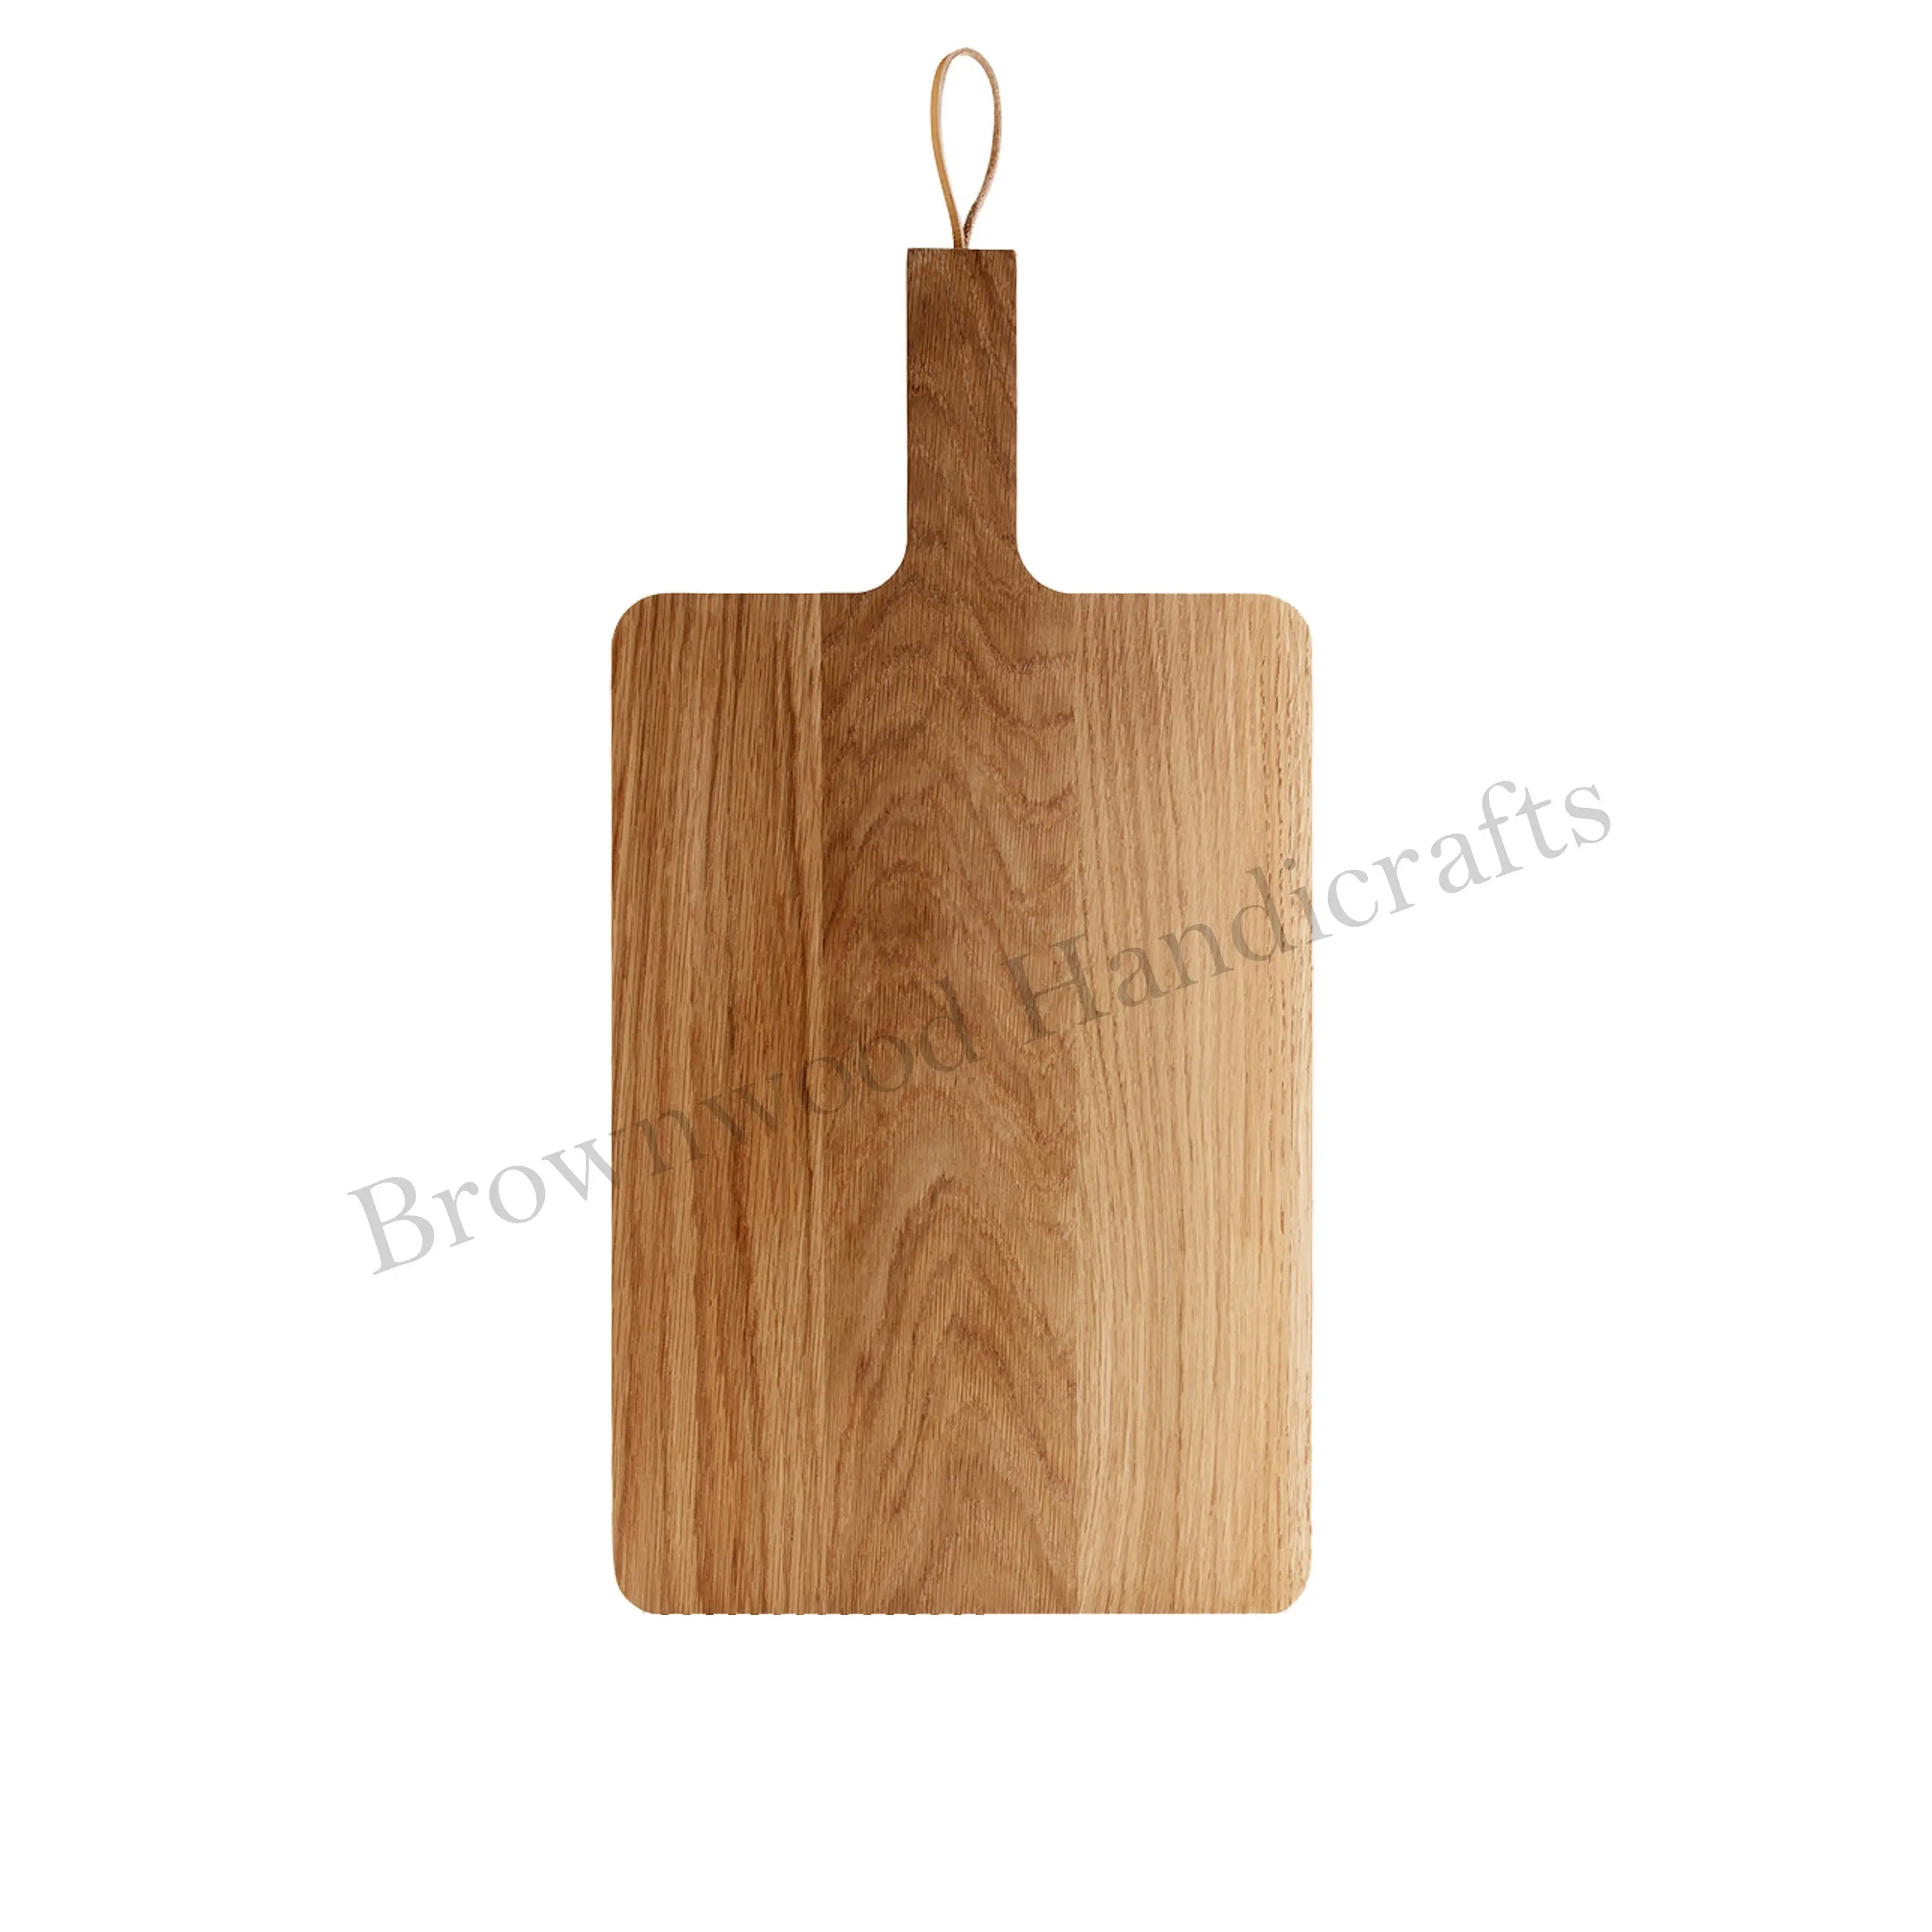 प्रीमियम गुणवत्ता वाले आम की लकड़ी का चॉपिंग बोर्ड, हैंडल के साथ कटिंग बोर्ड, लकड़ी की सर्विंग प्लेट, वेज सलाद, मीट चॉप बोर्ड